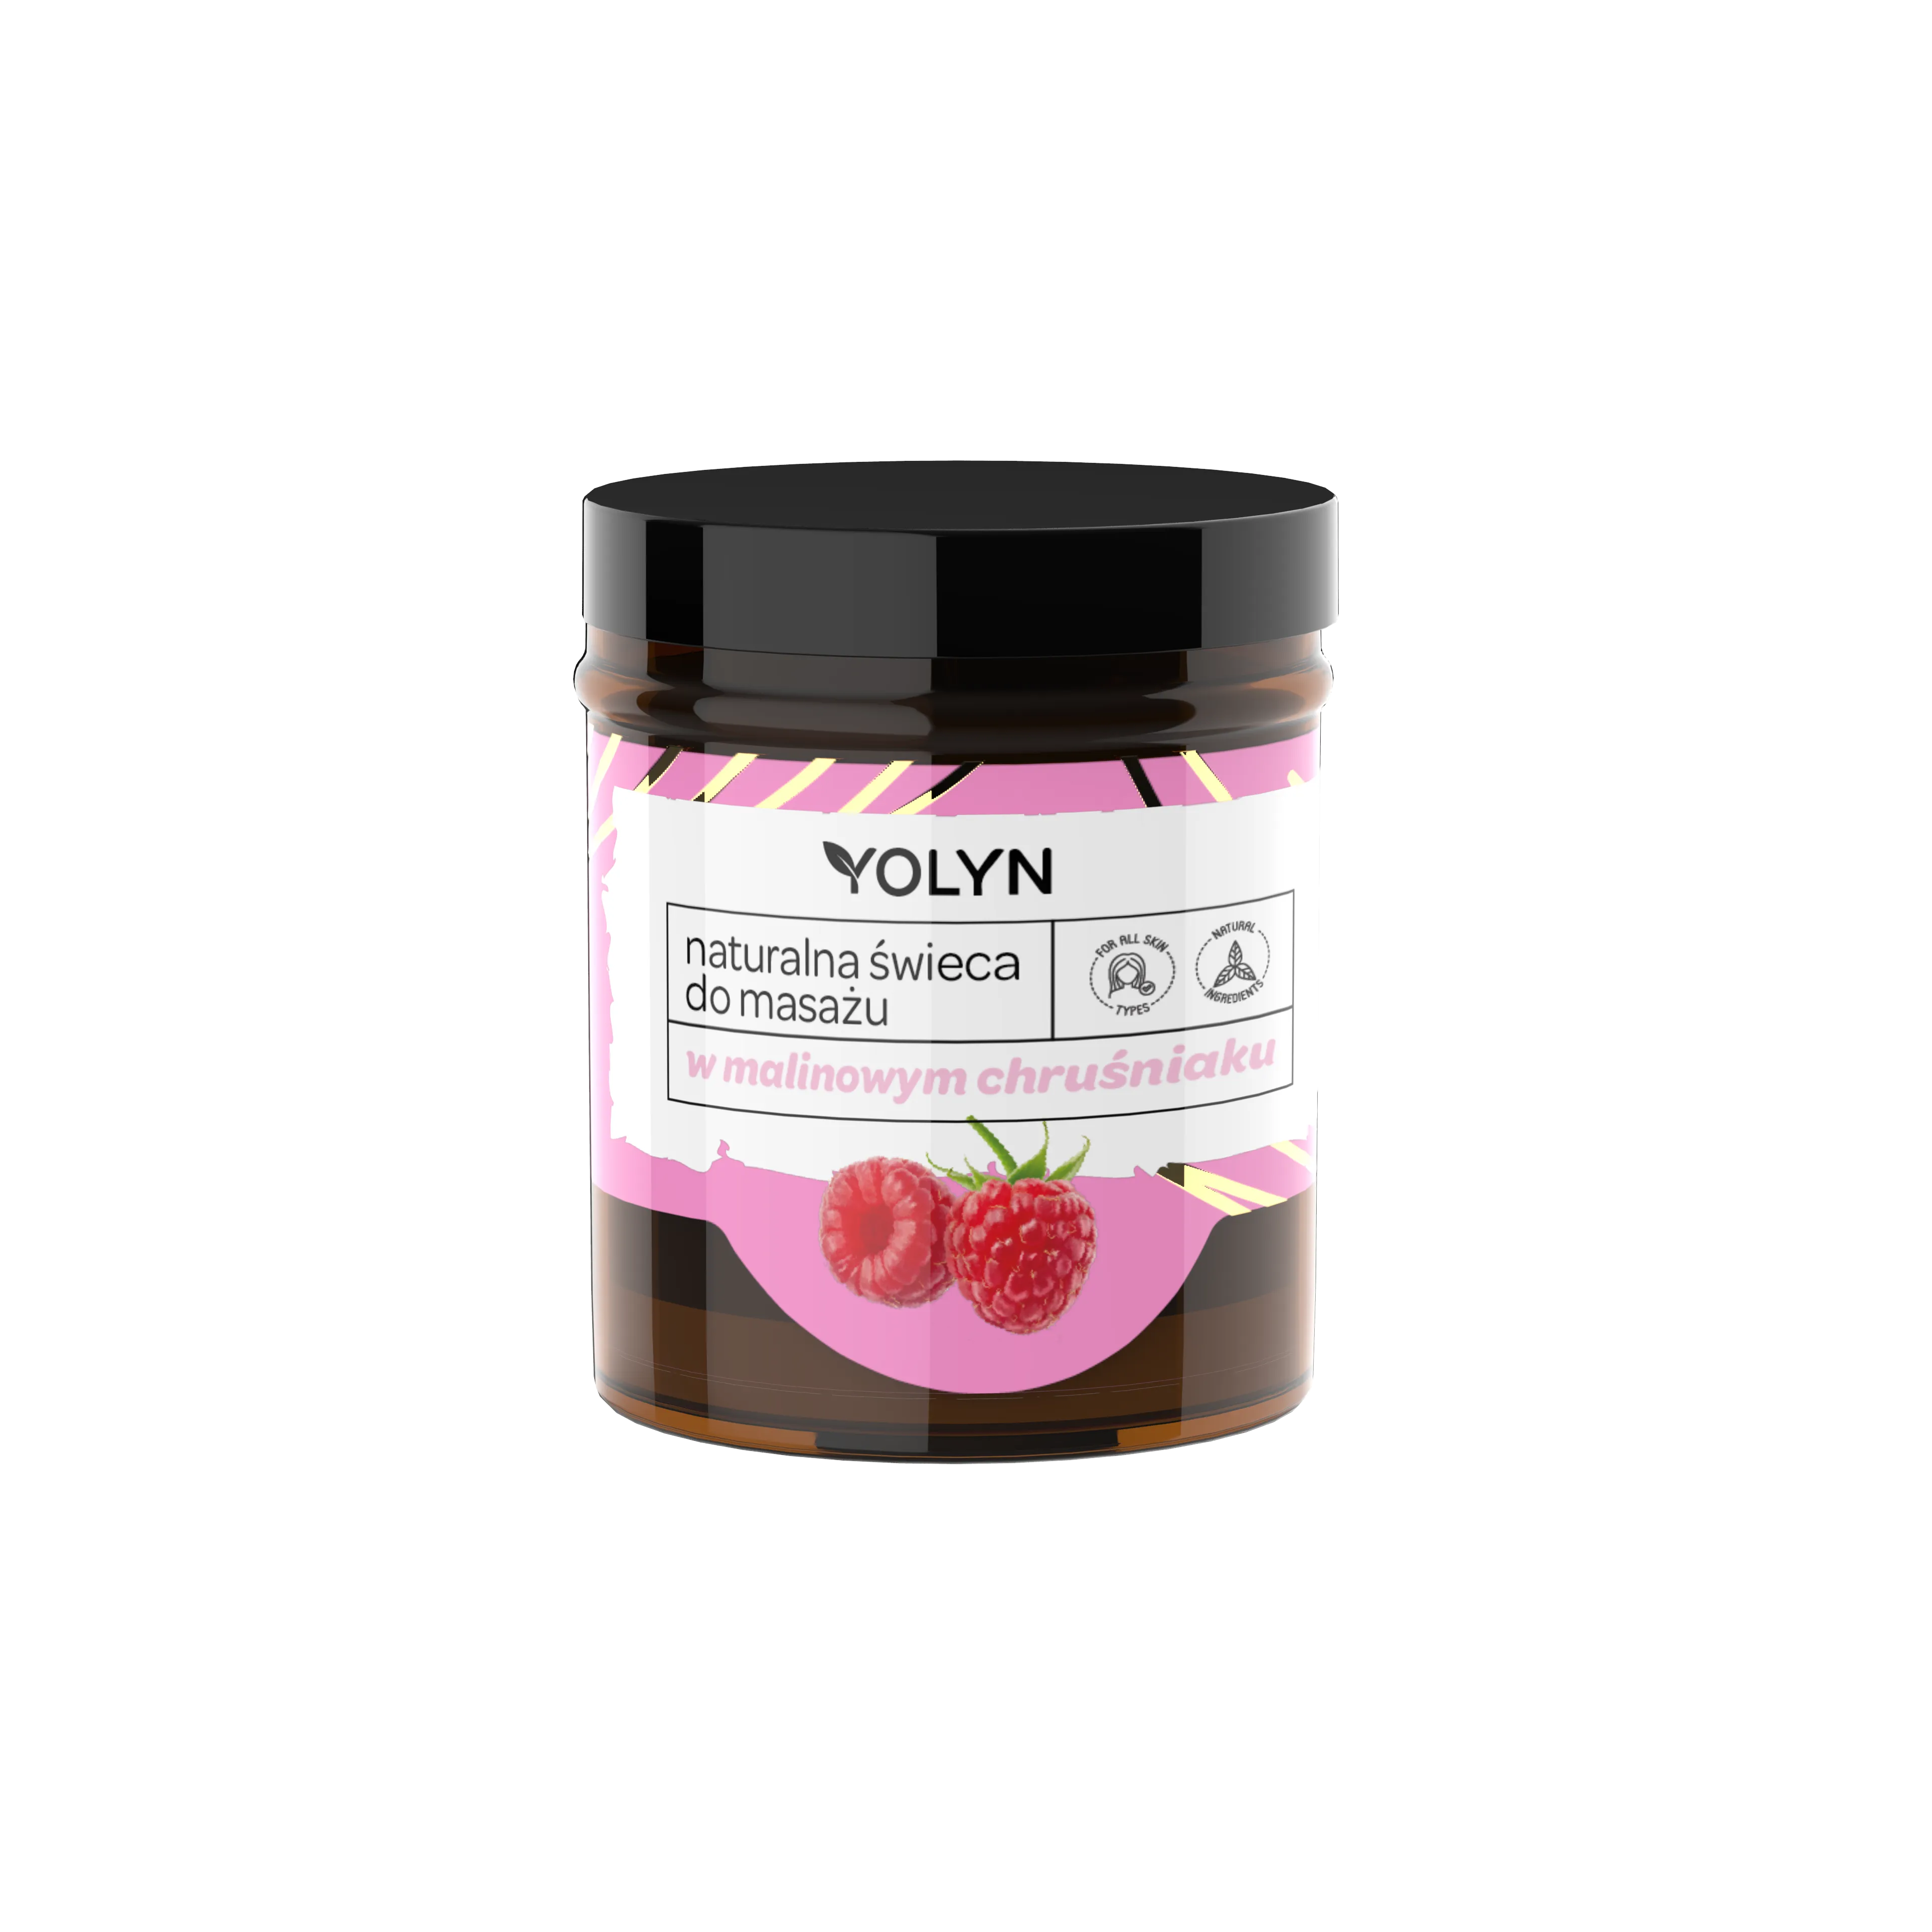 Yolyn naturalna świeca do masażu, w malinowym chruśniaku, 120 ml